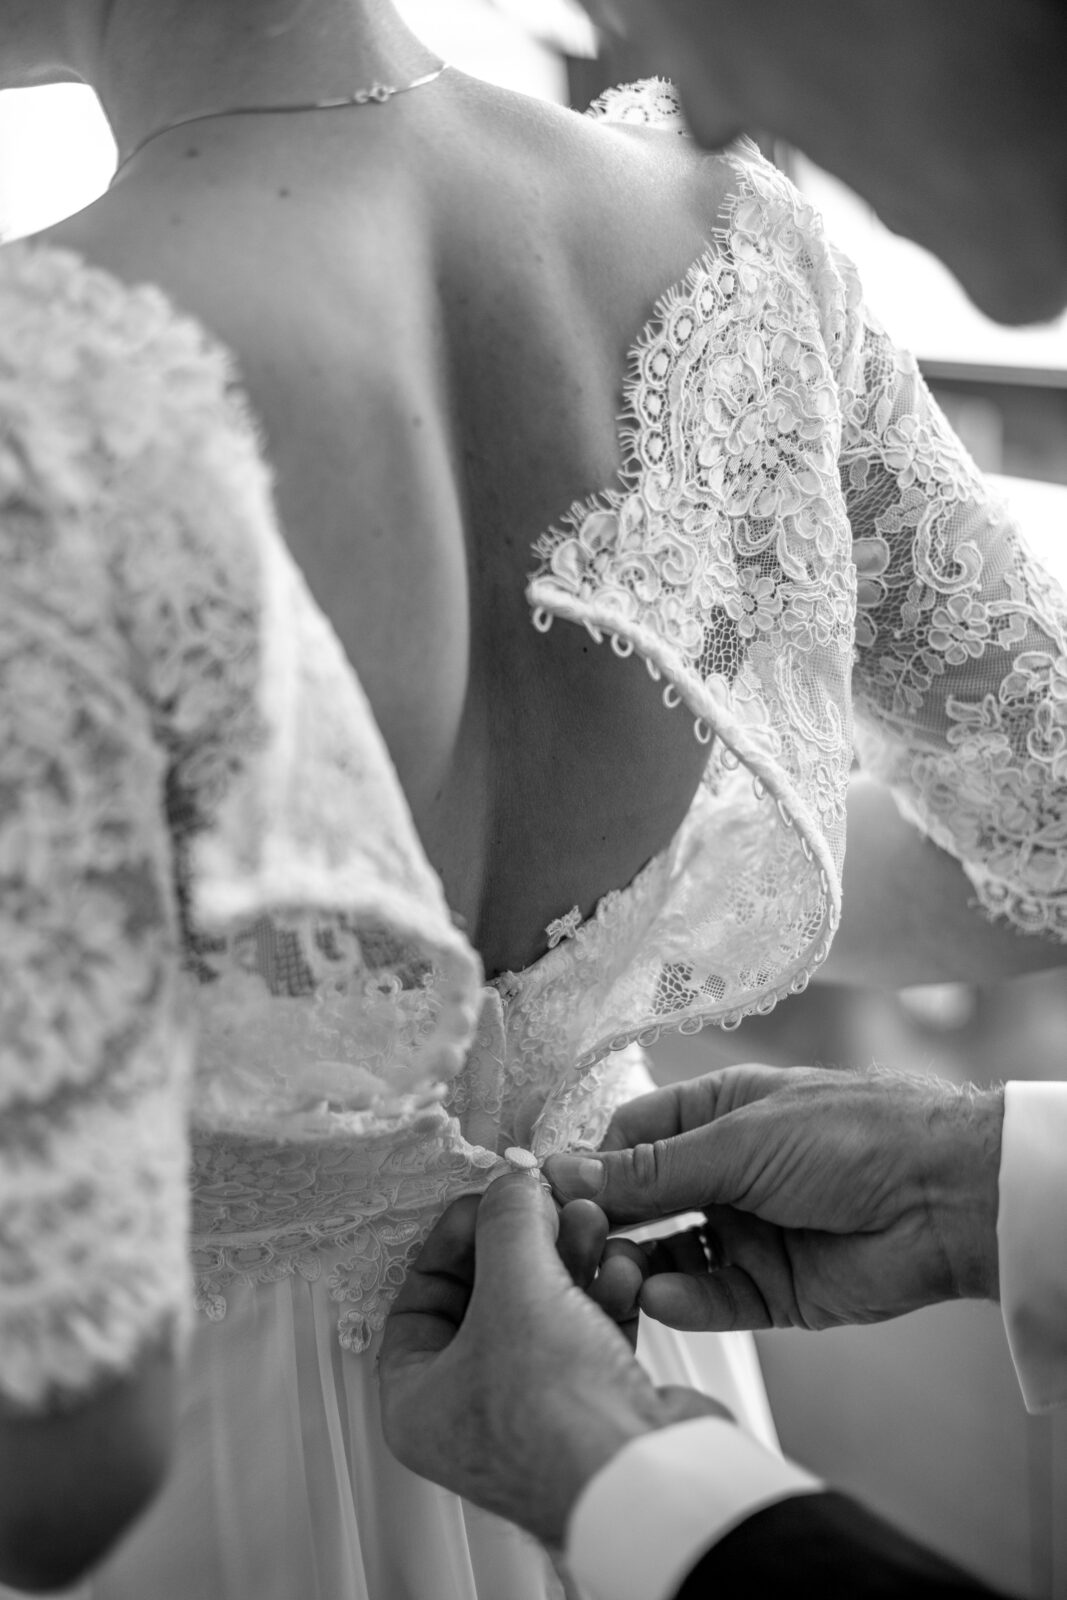 Detailfoto von Hochzeitskleid von Hochzeit am Bodensee